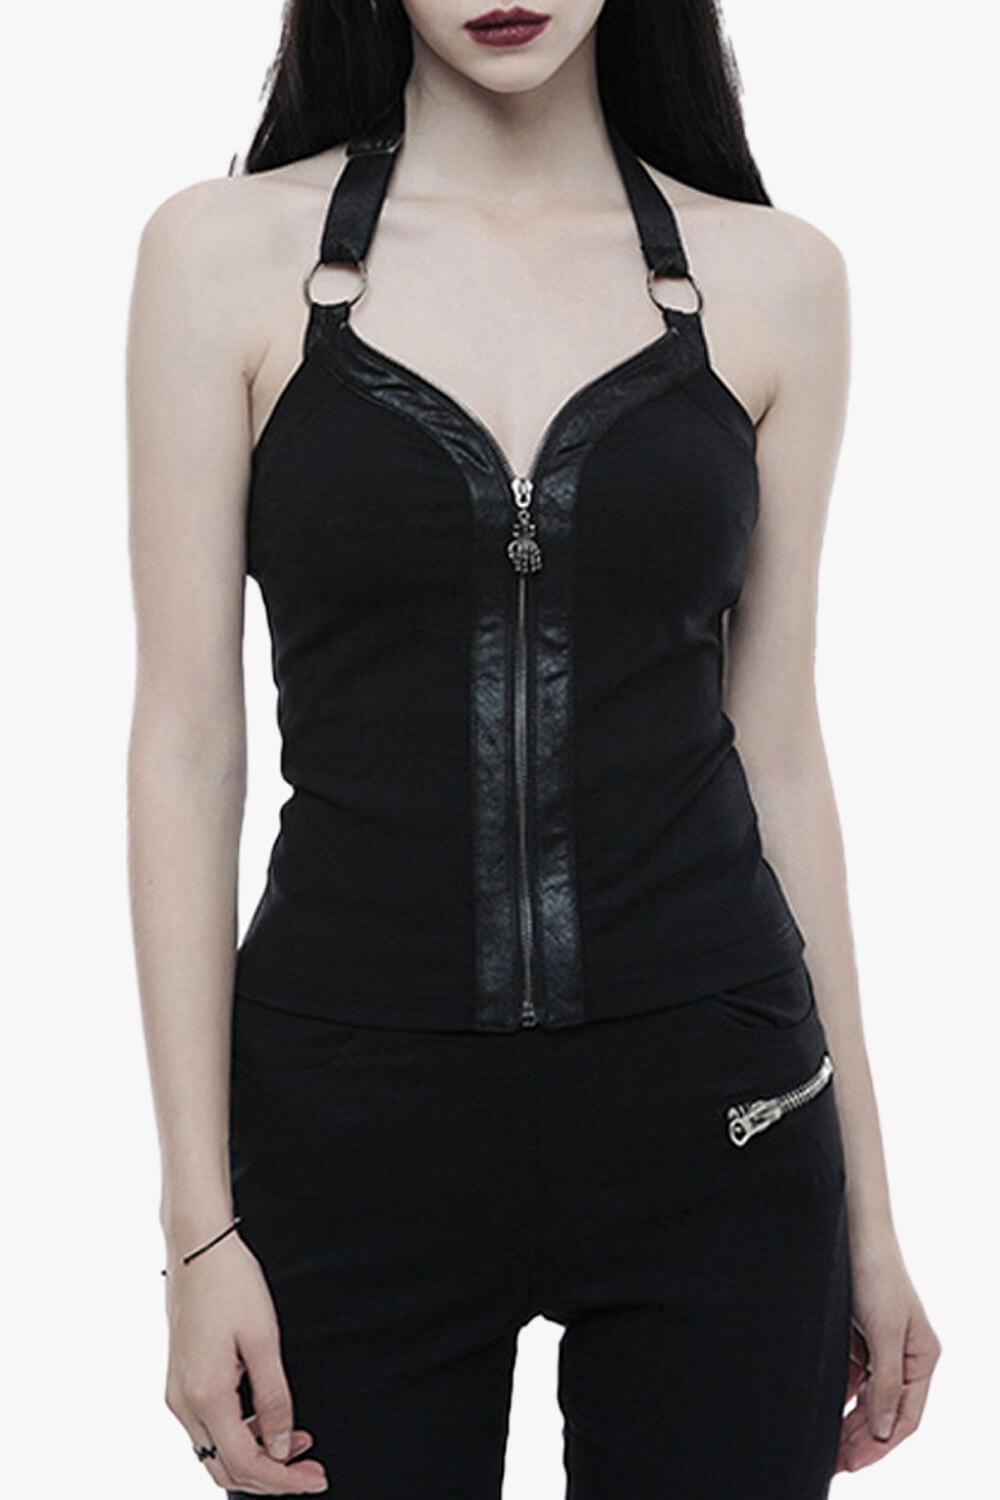 Dark Fashion Goth Corset Vest - Aesthetic Clothes Shop